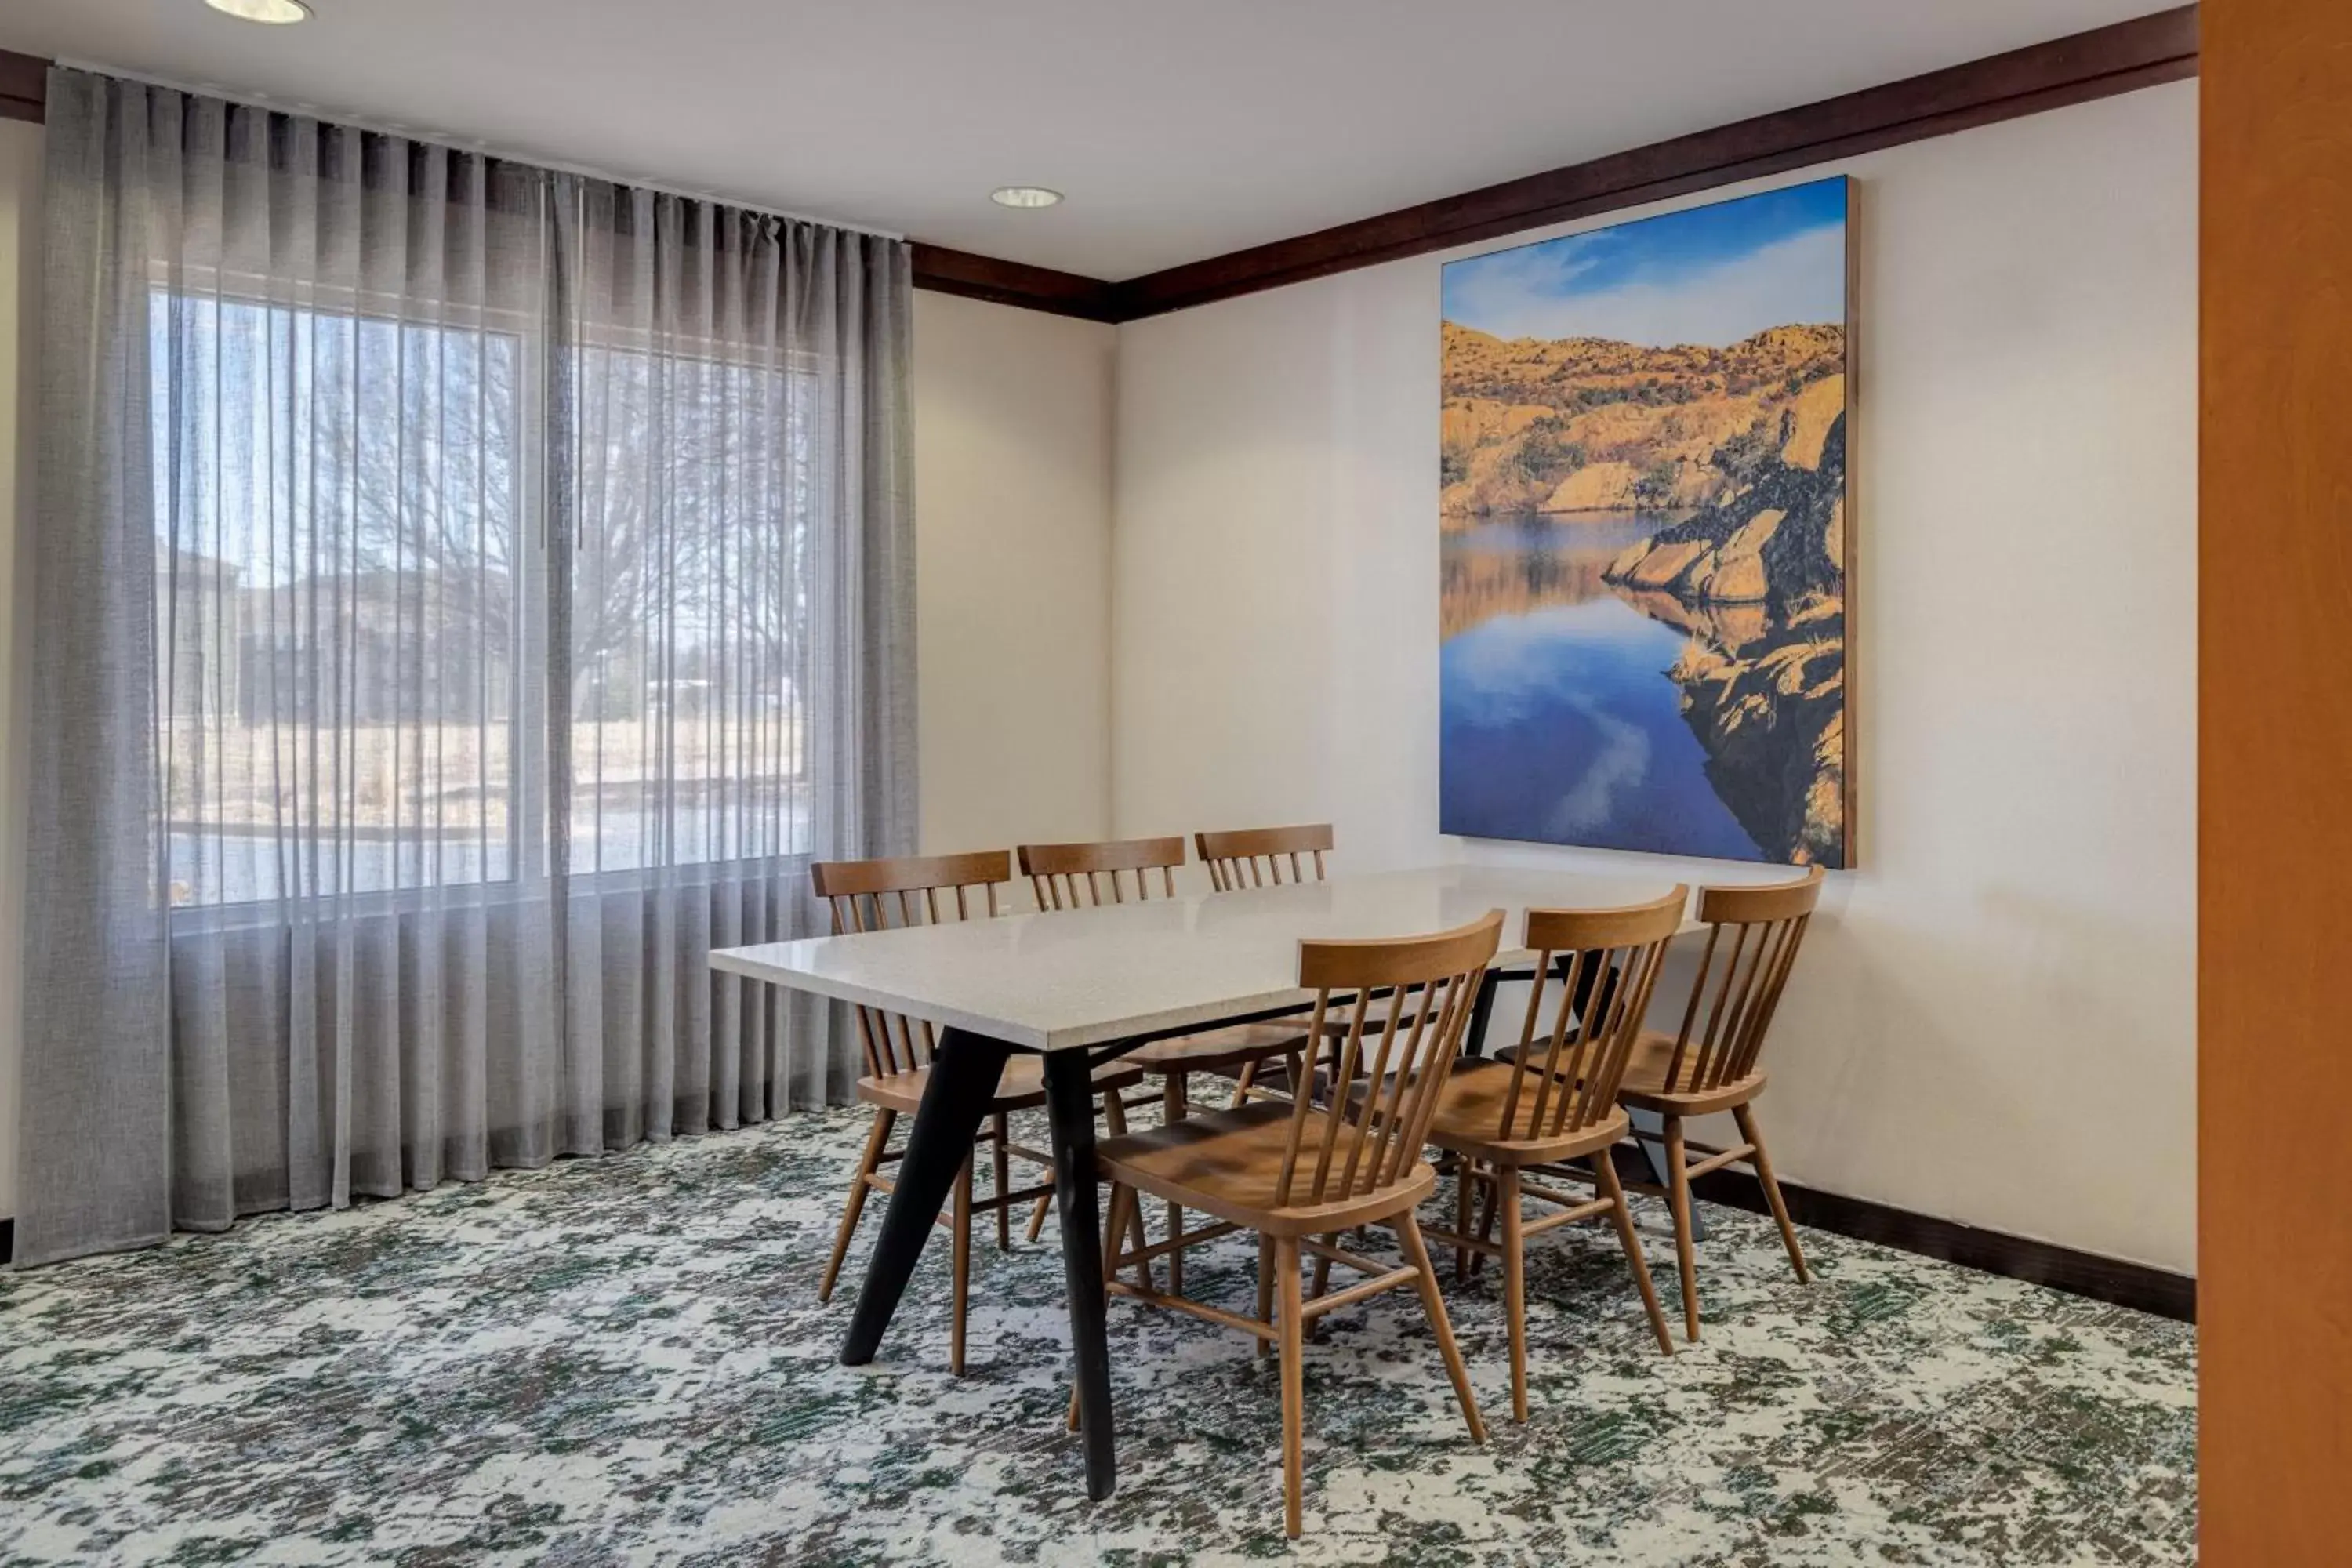 Lobby or reception in Fairfield Inn & Suites by Marriott Lawton